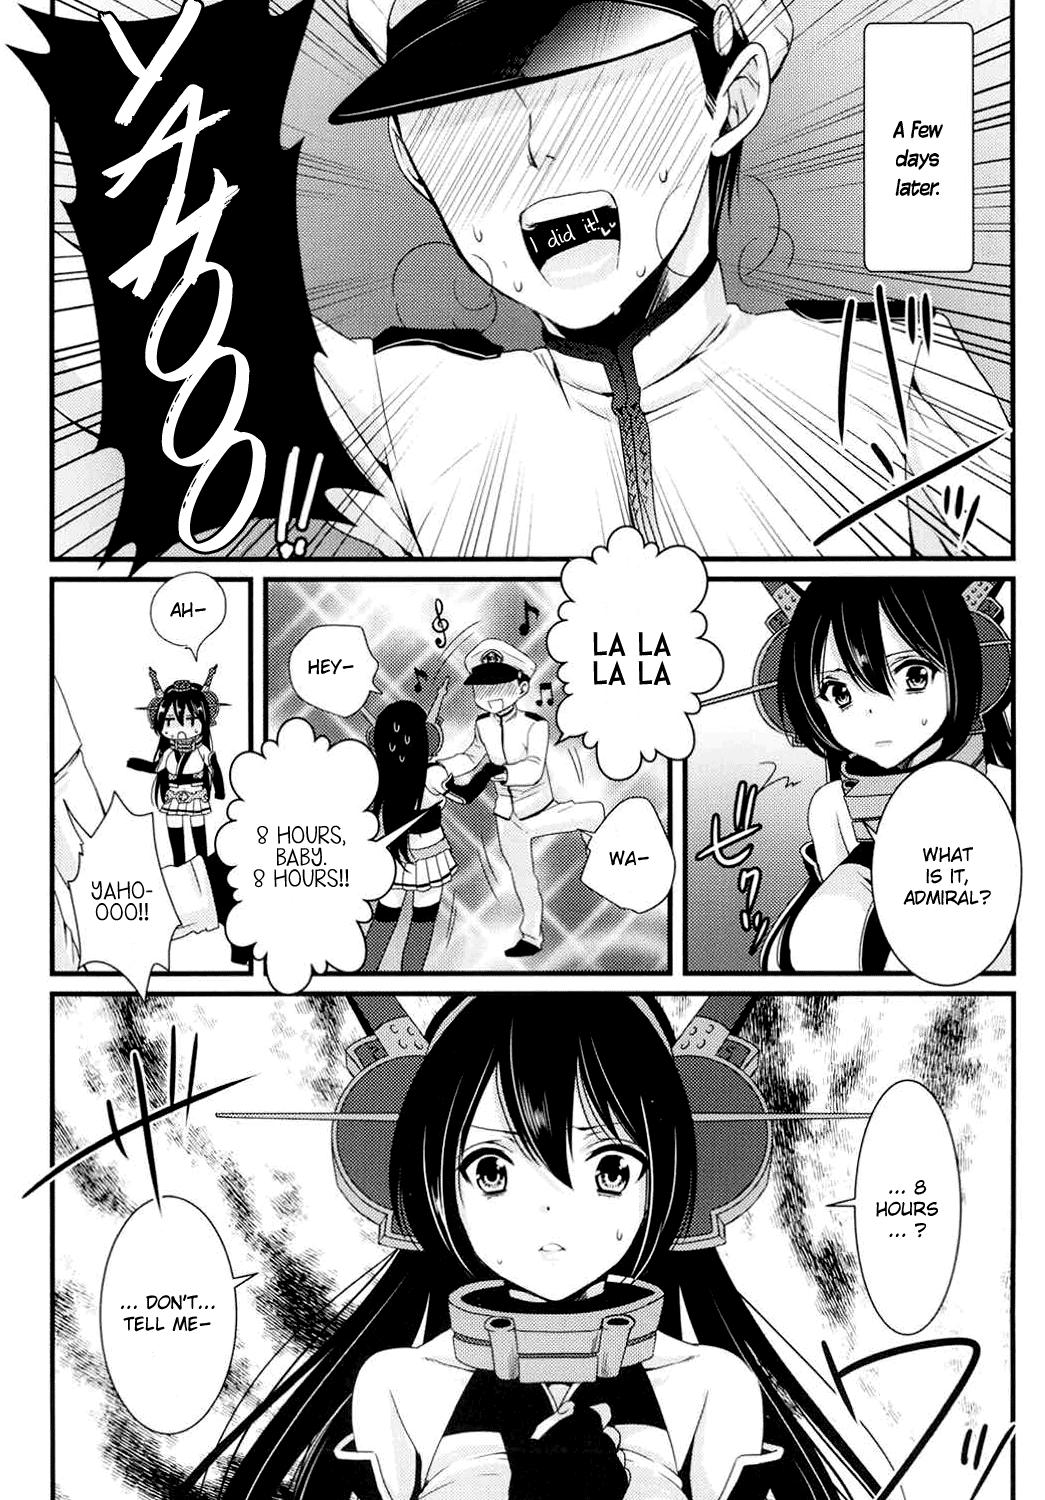 Saikin, Teitoku no Yousu ga Chotto Okashii no daga | Recently, the Admiral's been acting a bit strangely 4